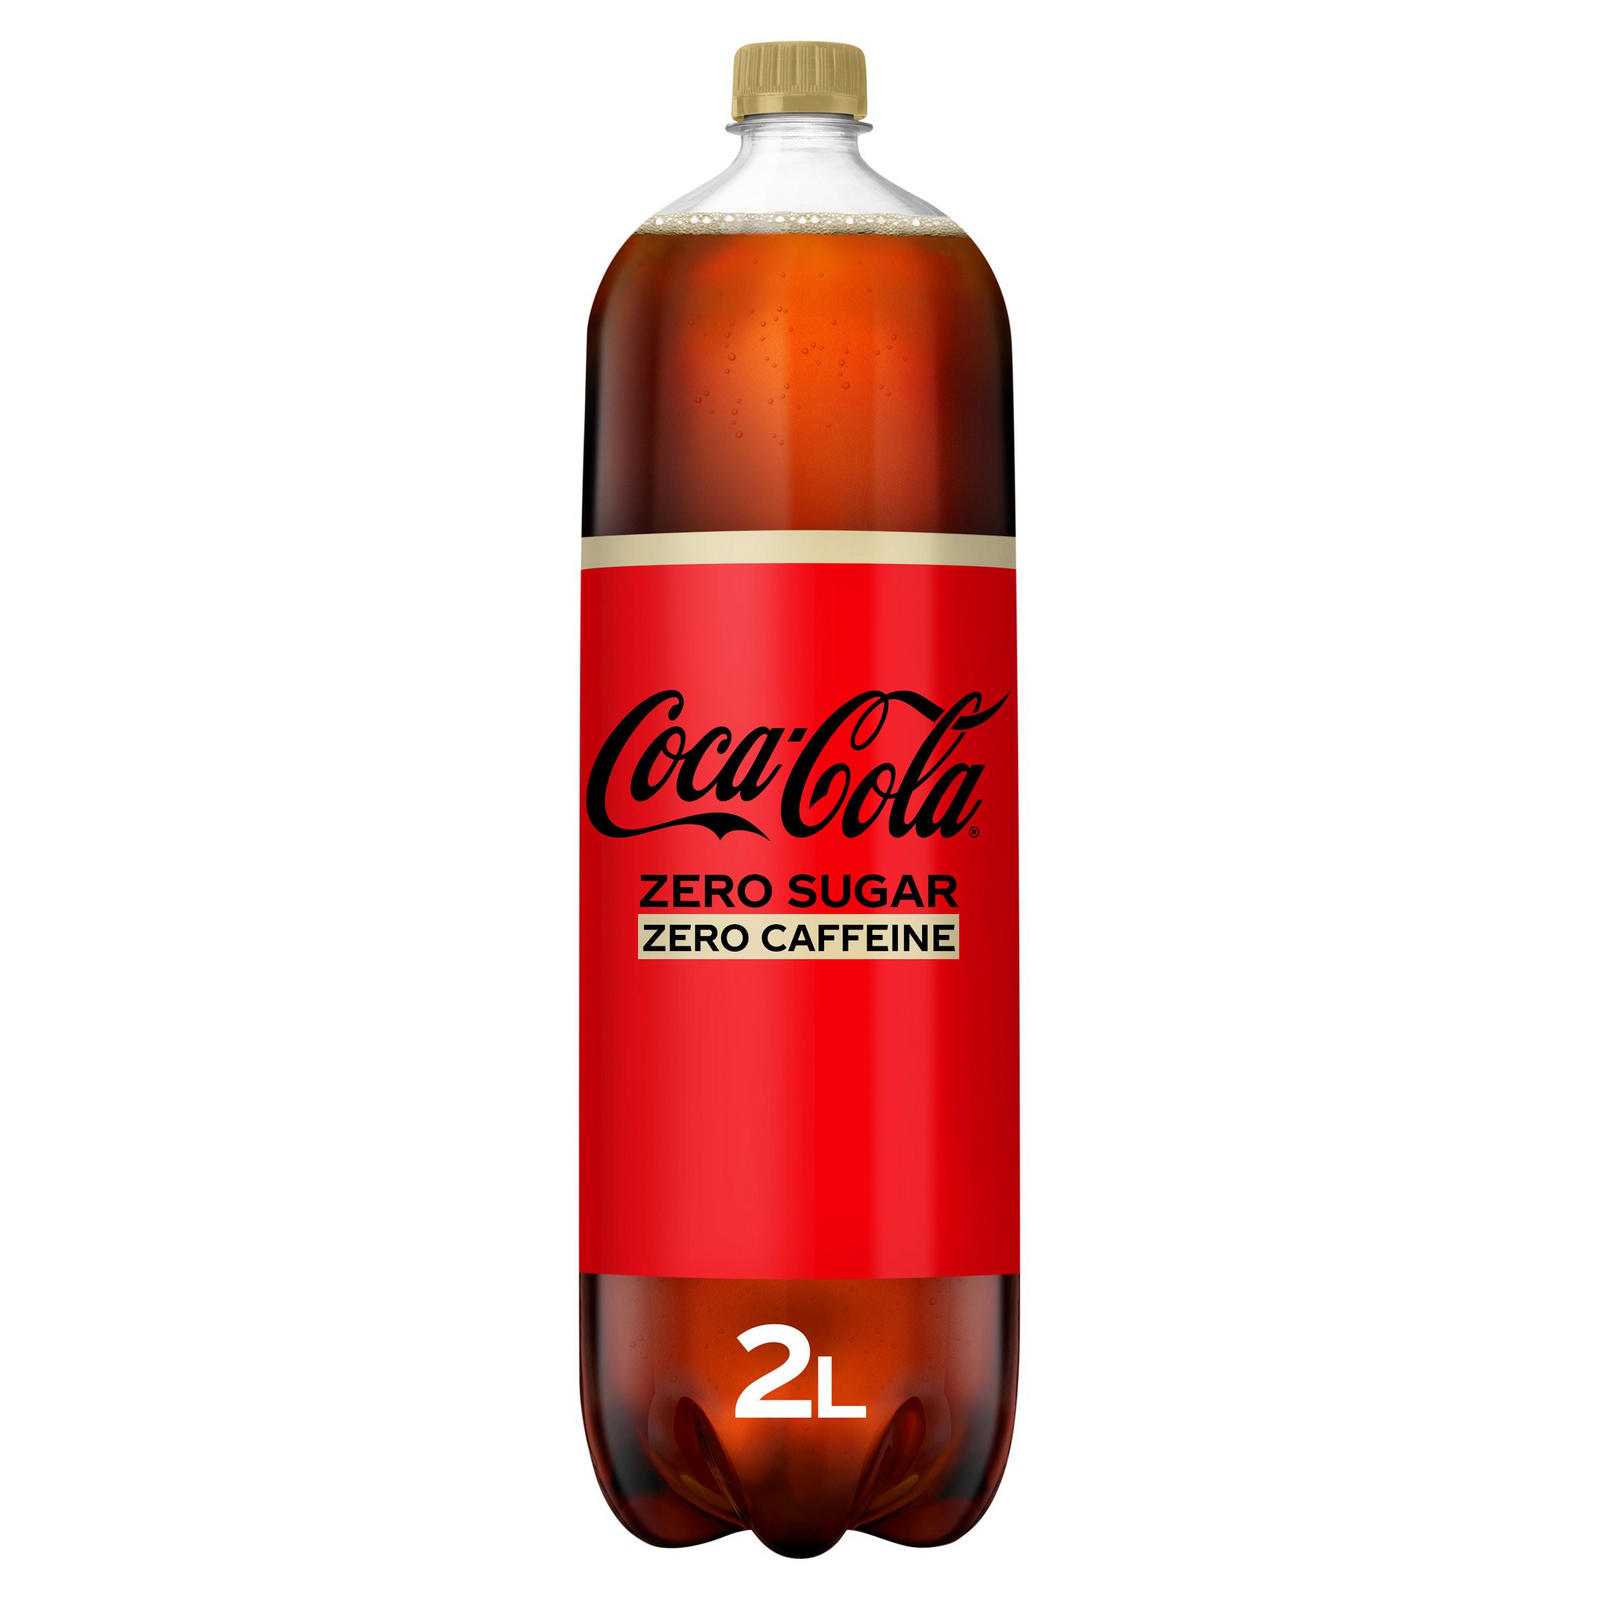 Кока кола кофеин. Coca Cola Zero Sugar. Берн Зеро Шугар. Flash x2 кофеин. Флеш 2 кофеин.